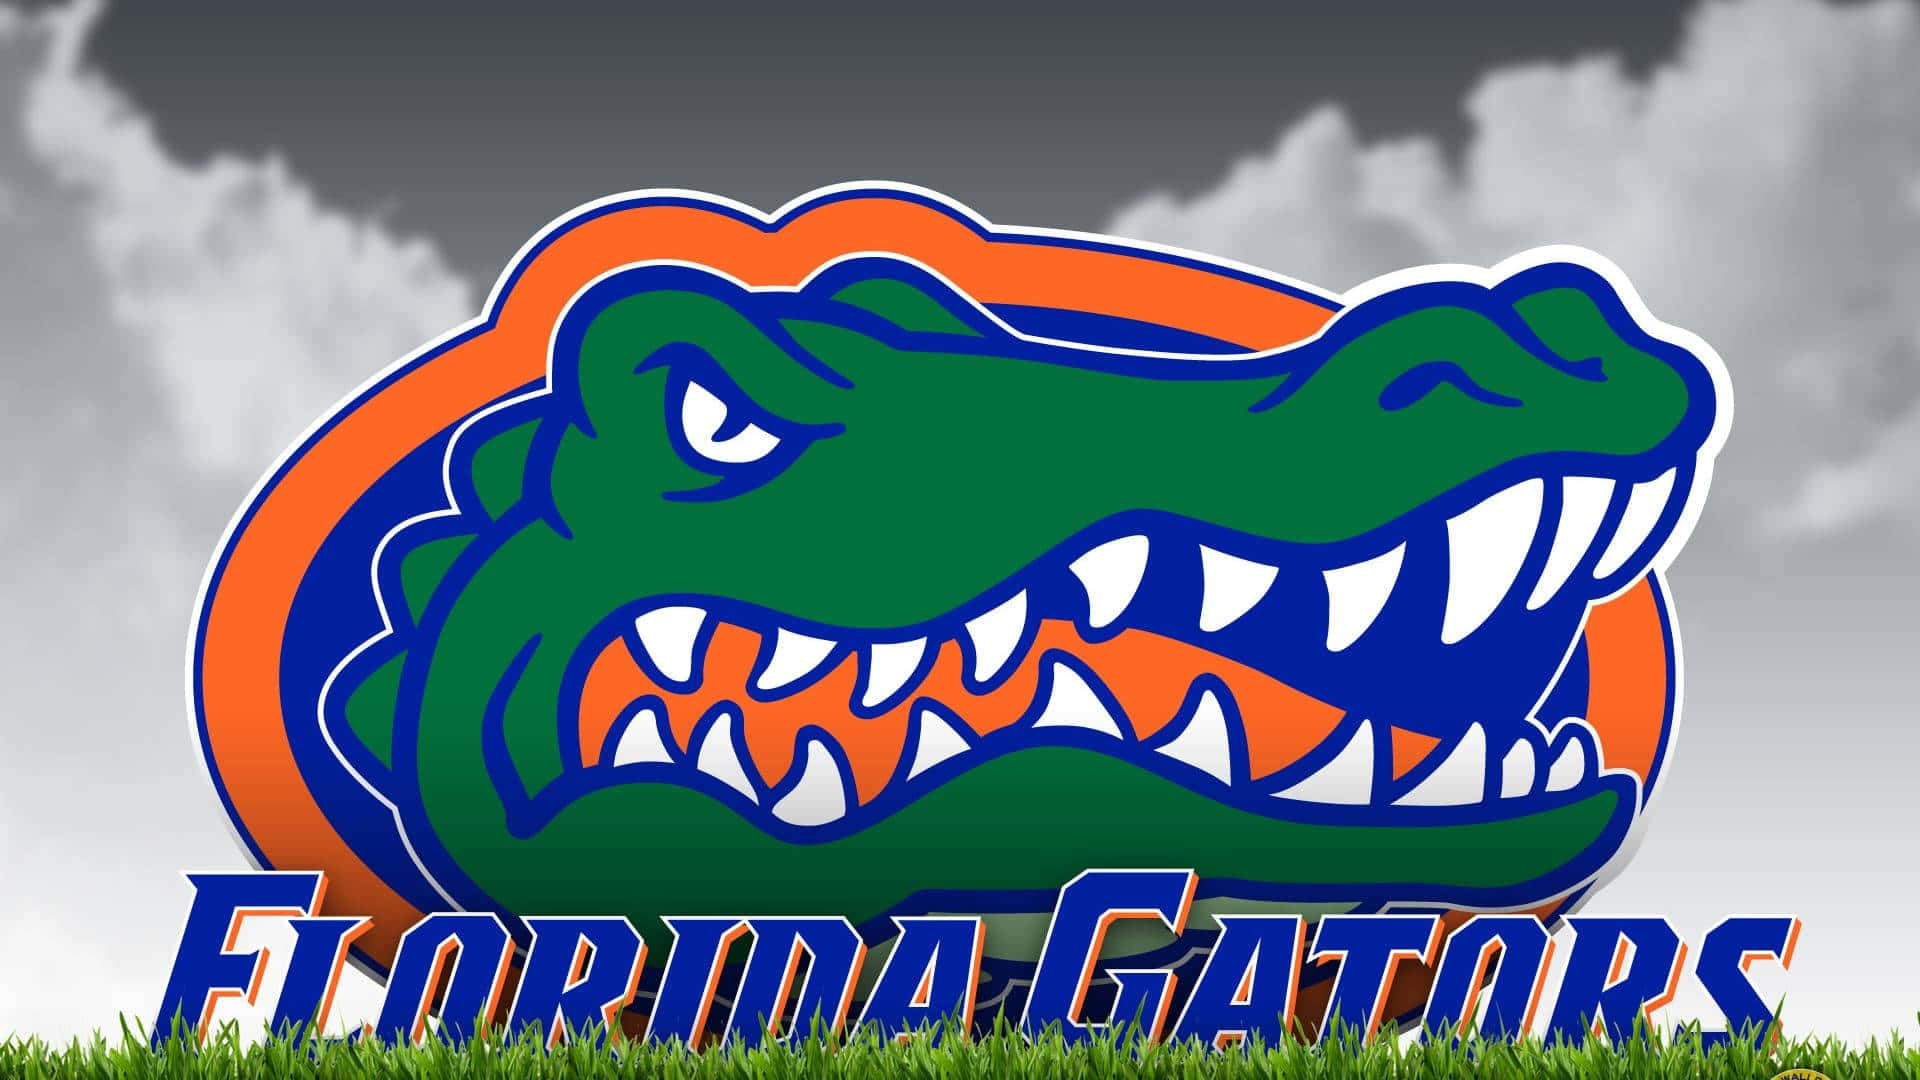 Zeigensie Ihre Unterstützung Für Die Florida Gators Mit Diesem Offiziellen Logo. Wallpaper